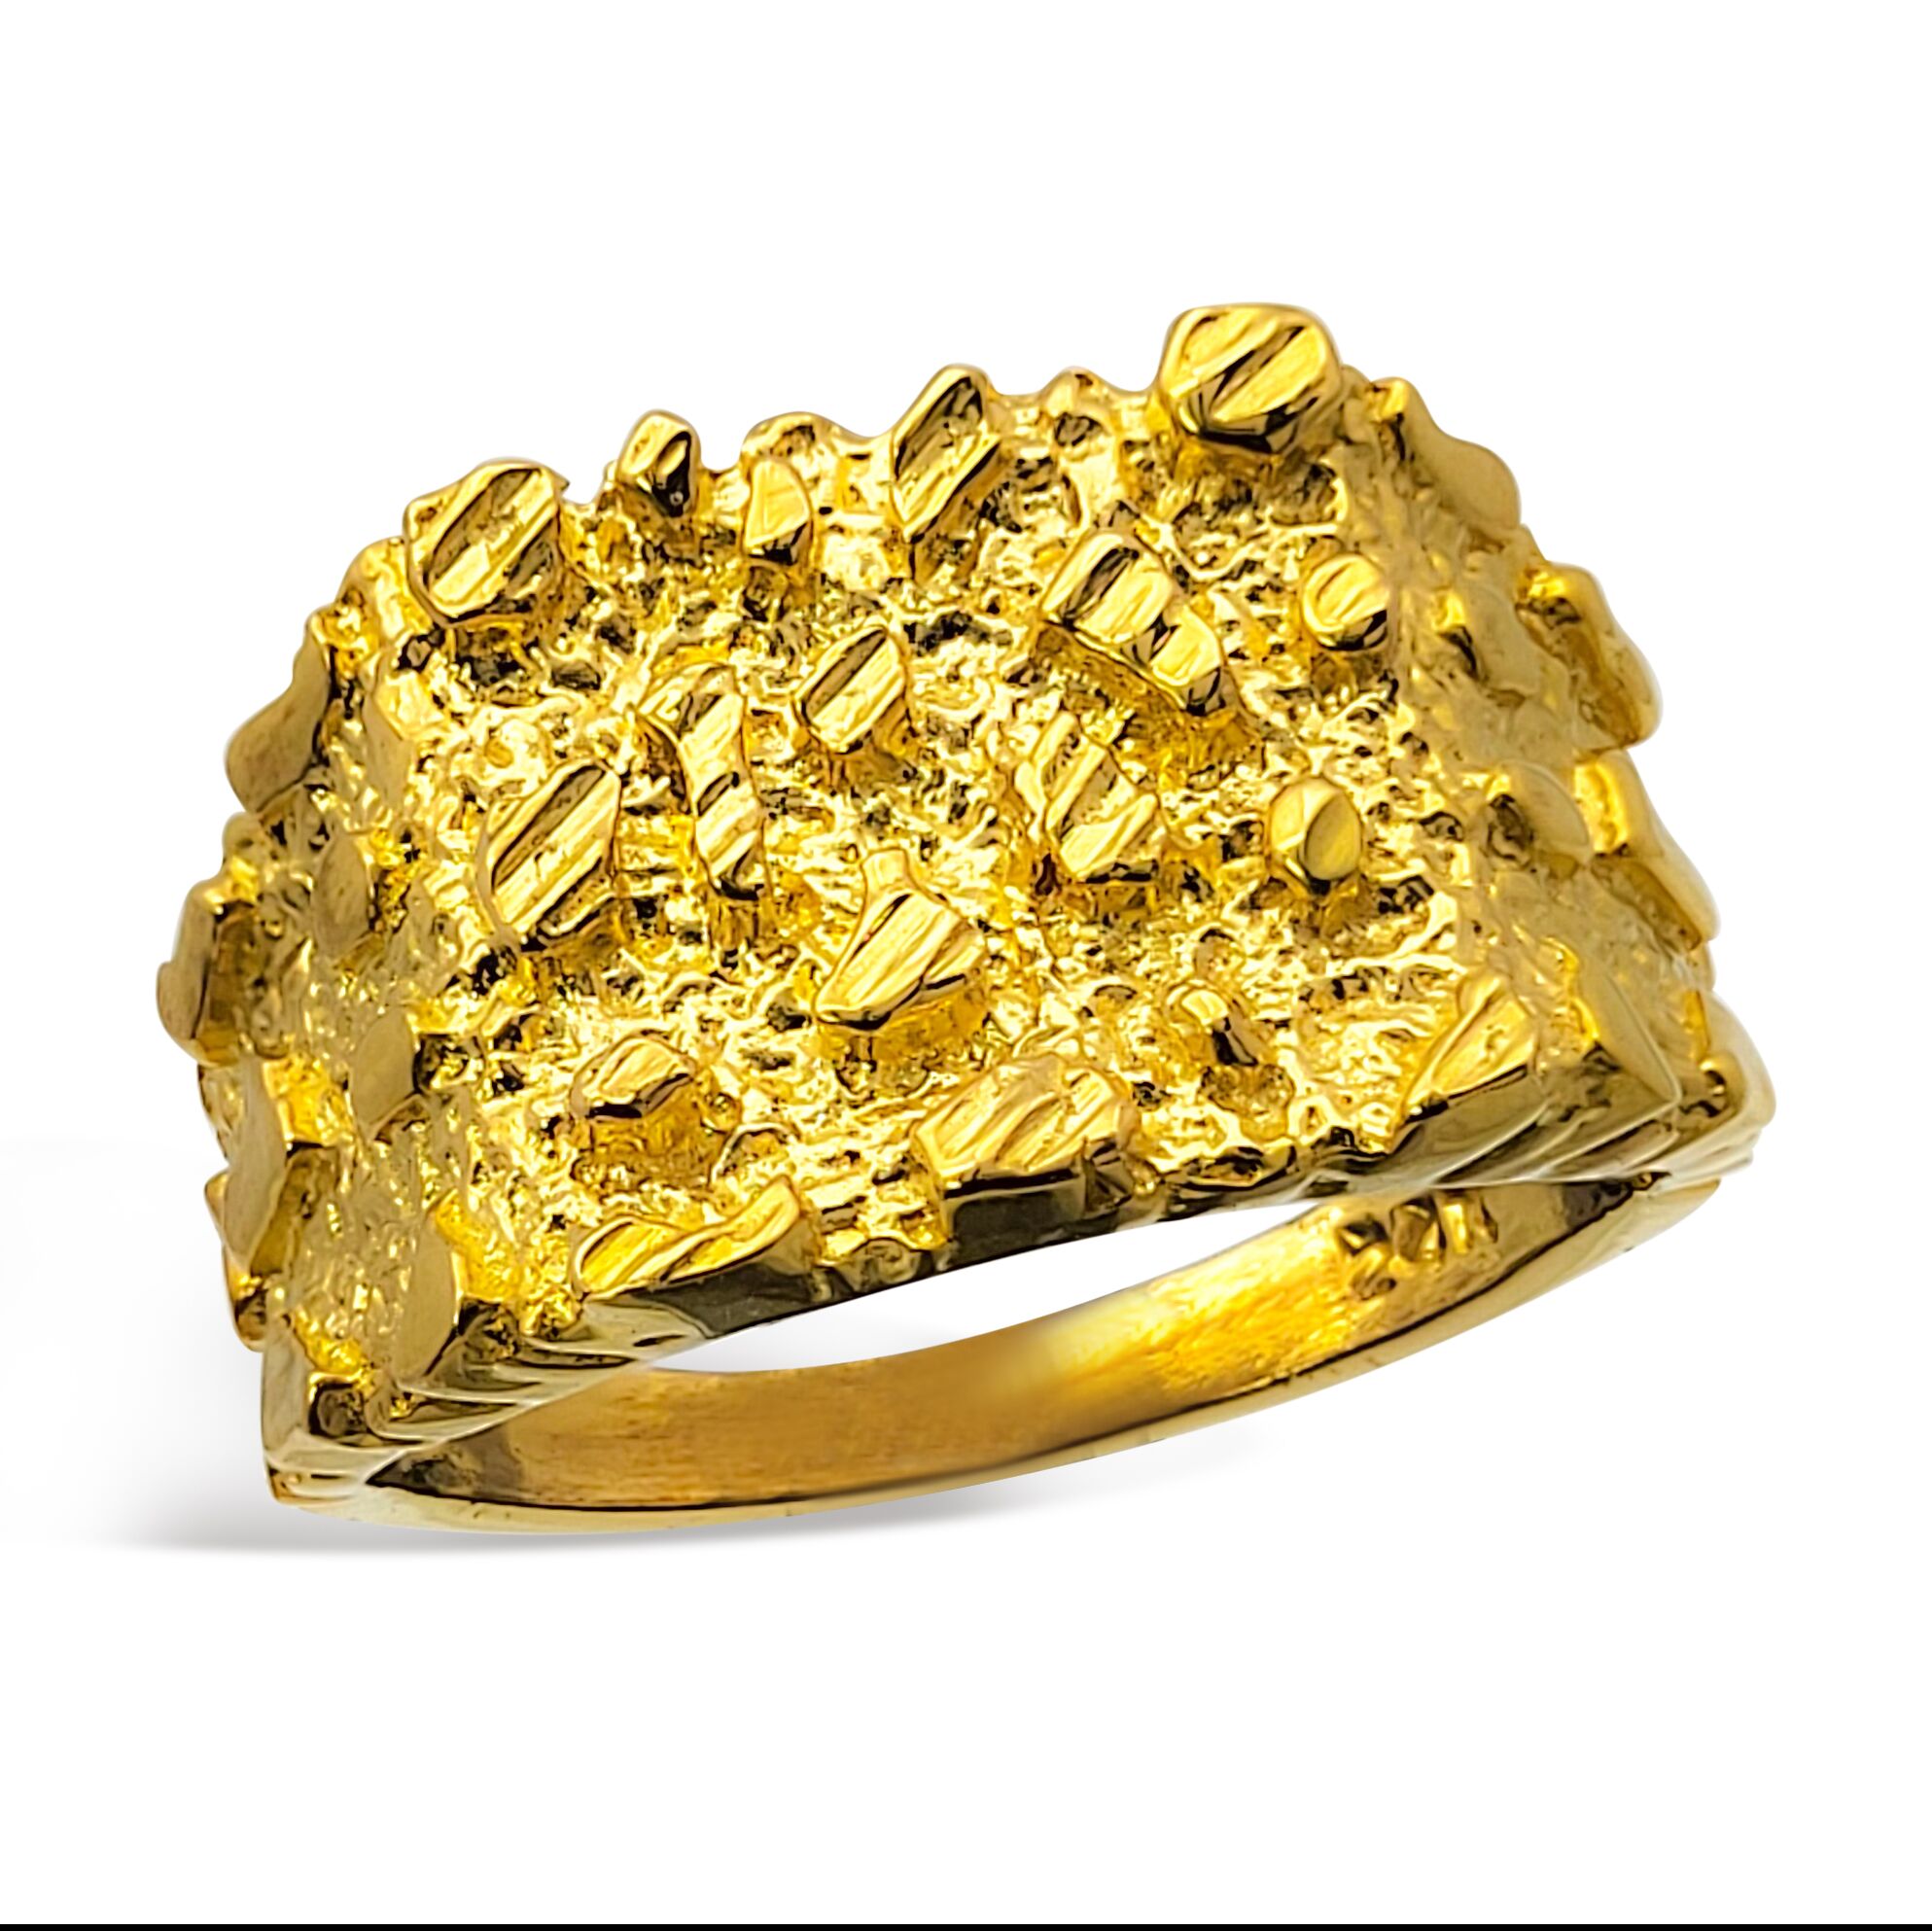 Bruz Gold Ring For Men | SEHGAL GOLD ORNAMENTS PVT. LTD.-smartinvestplan.com